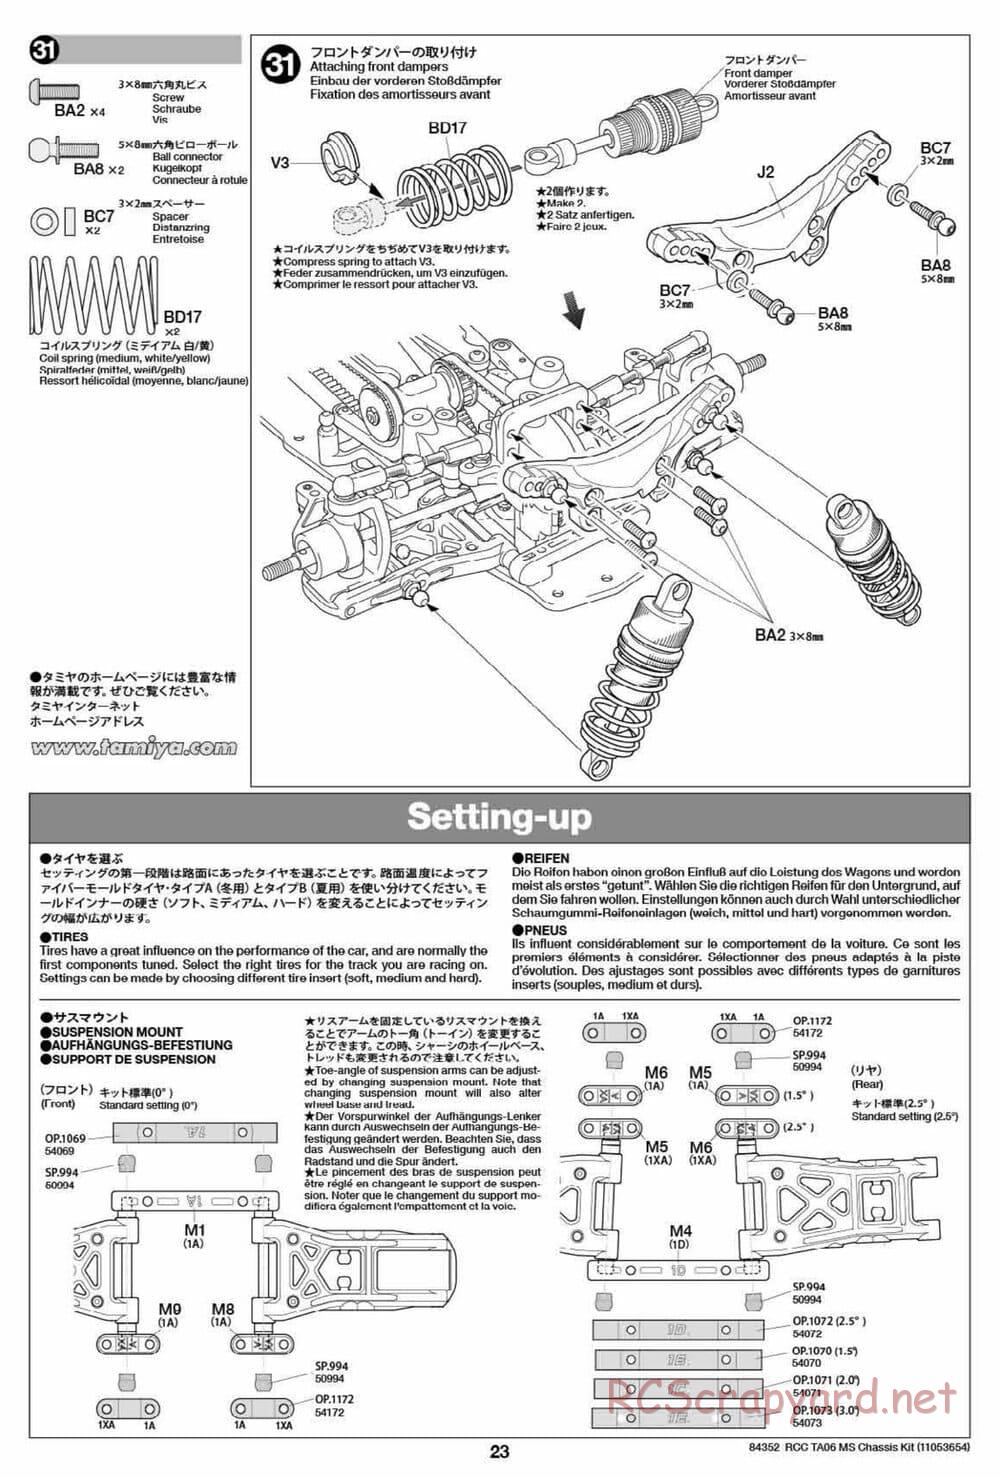 Tamiya - TA06 MS Chassis - Manual - Page 23